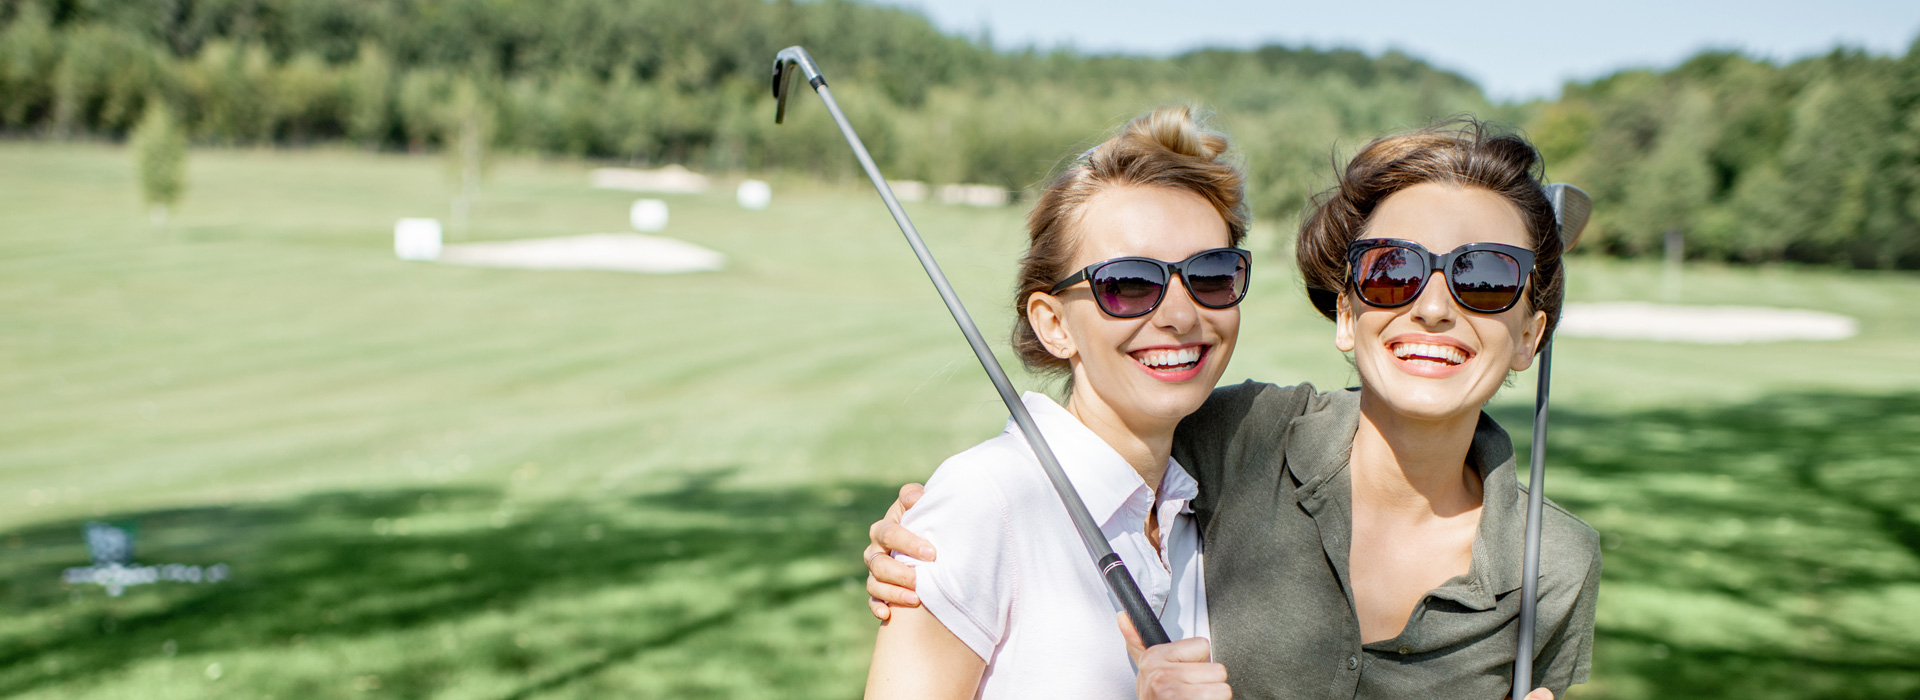 Golfurlaub mit der Freundin im Luxus-Golf-Resort in Österreich